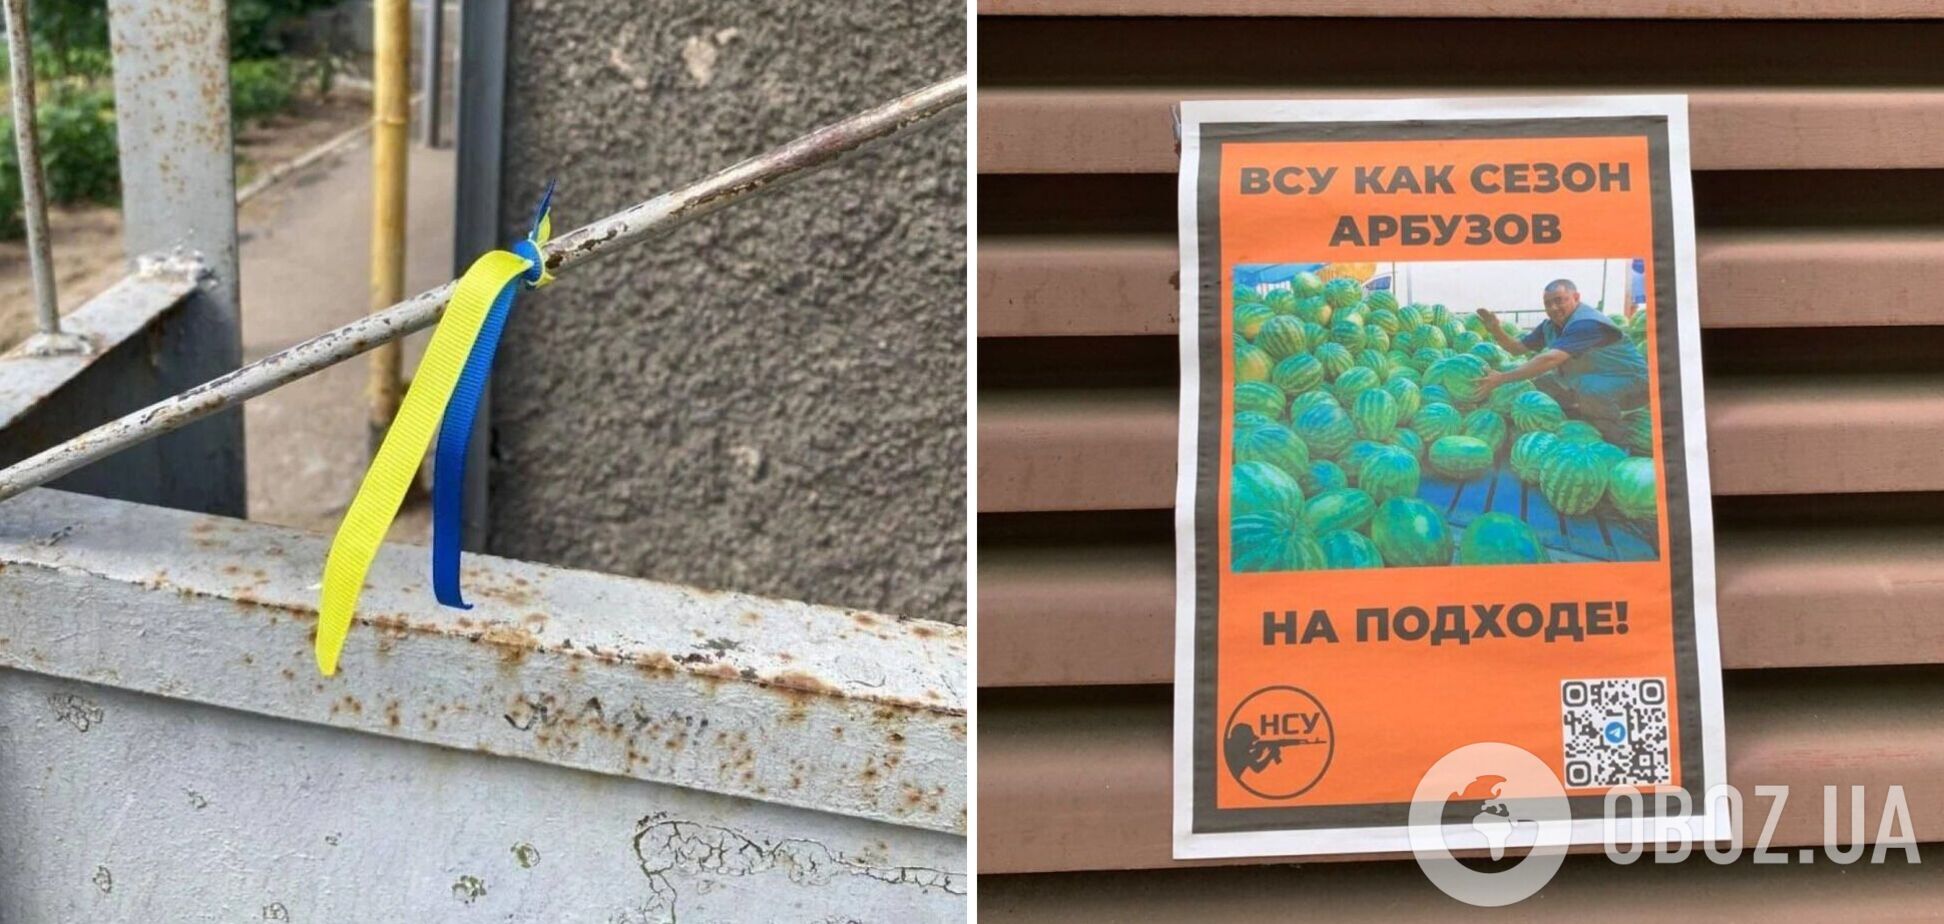 ВСУ, как сезон арбузов, уже на подходе: в Херсоне оставили яркие послания оккупантам. Фото